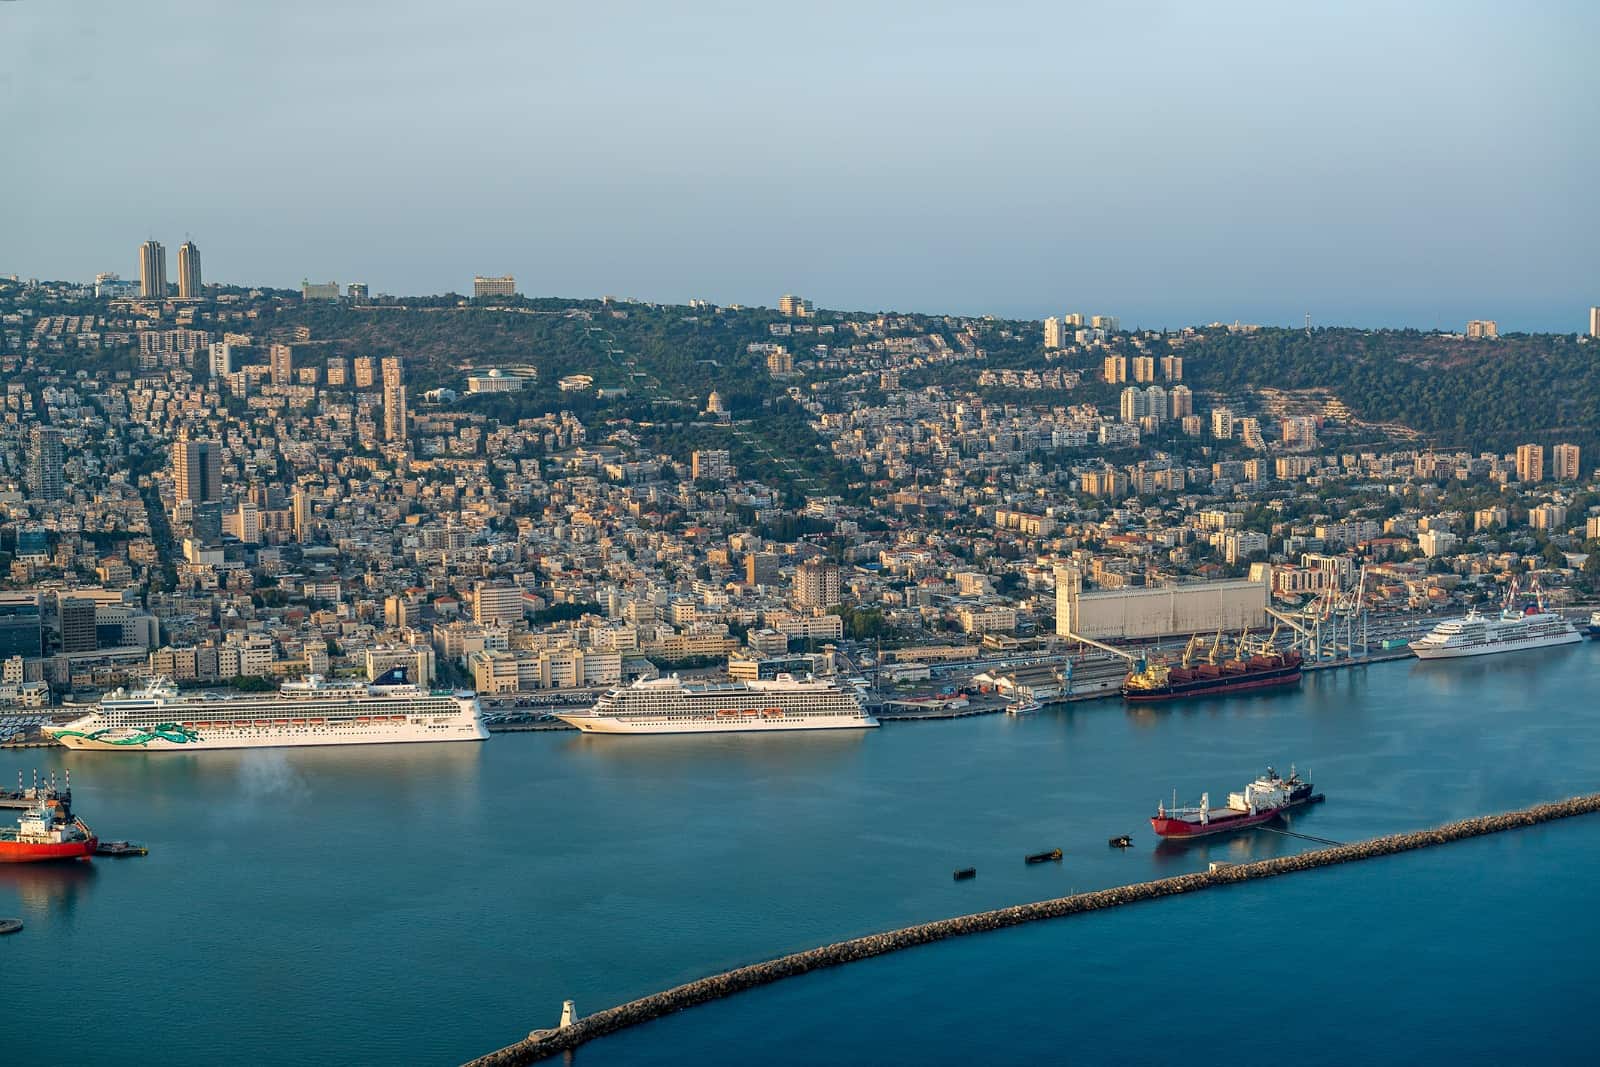 נחתם הסכם חזית הים נמל חיפה בין רשות מקרקעי ישראל לחנ"י ולנמל חיפה